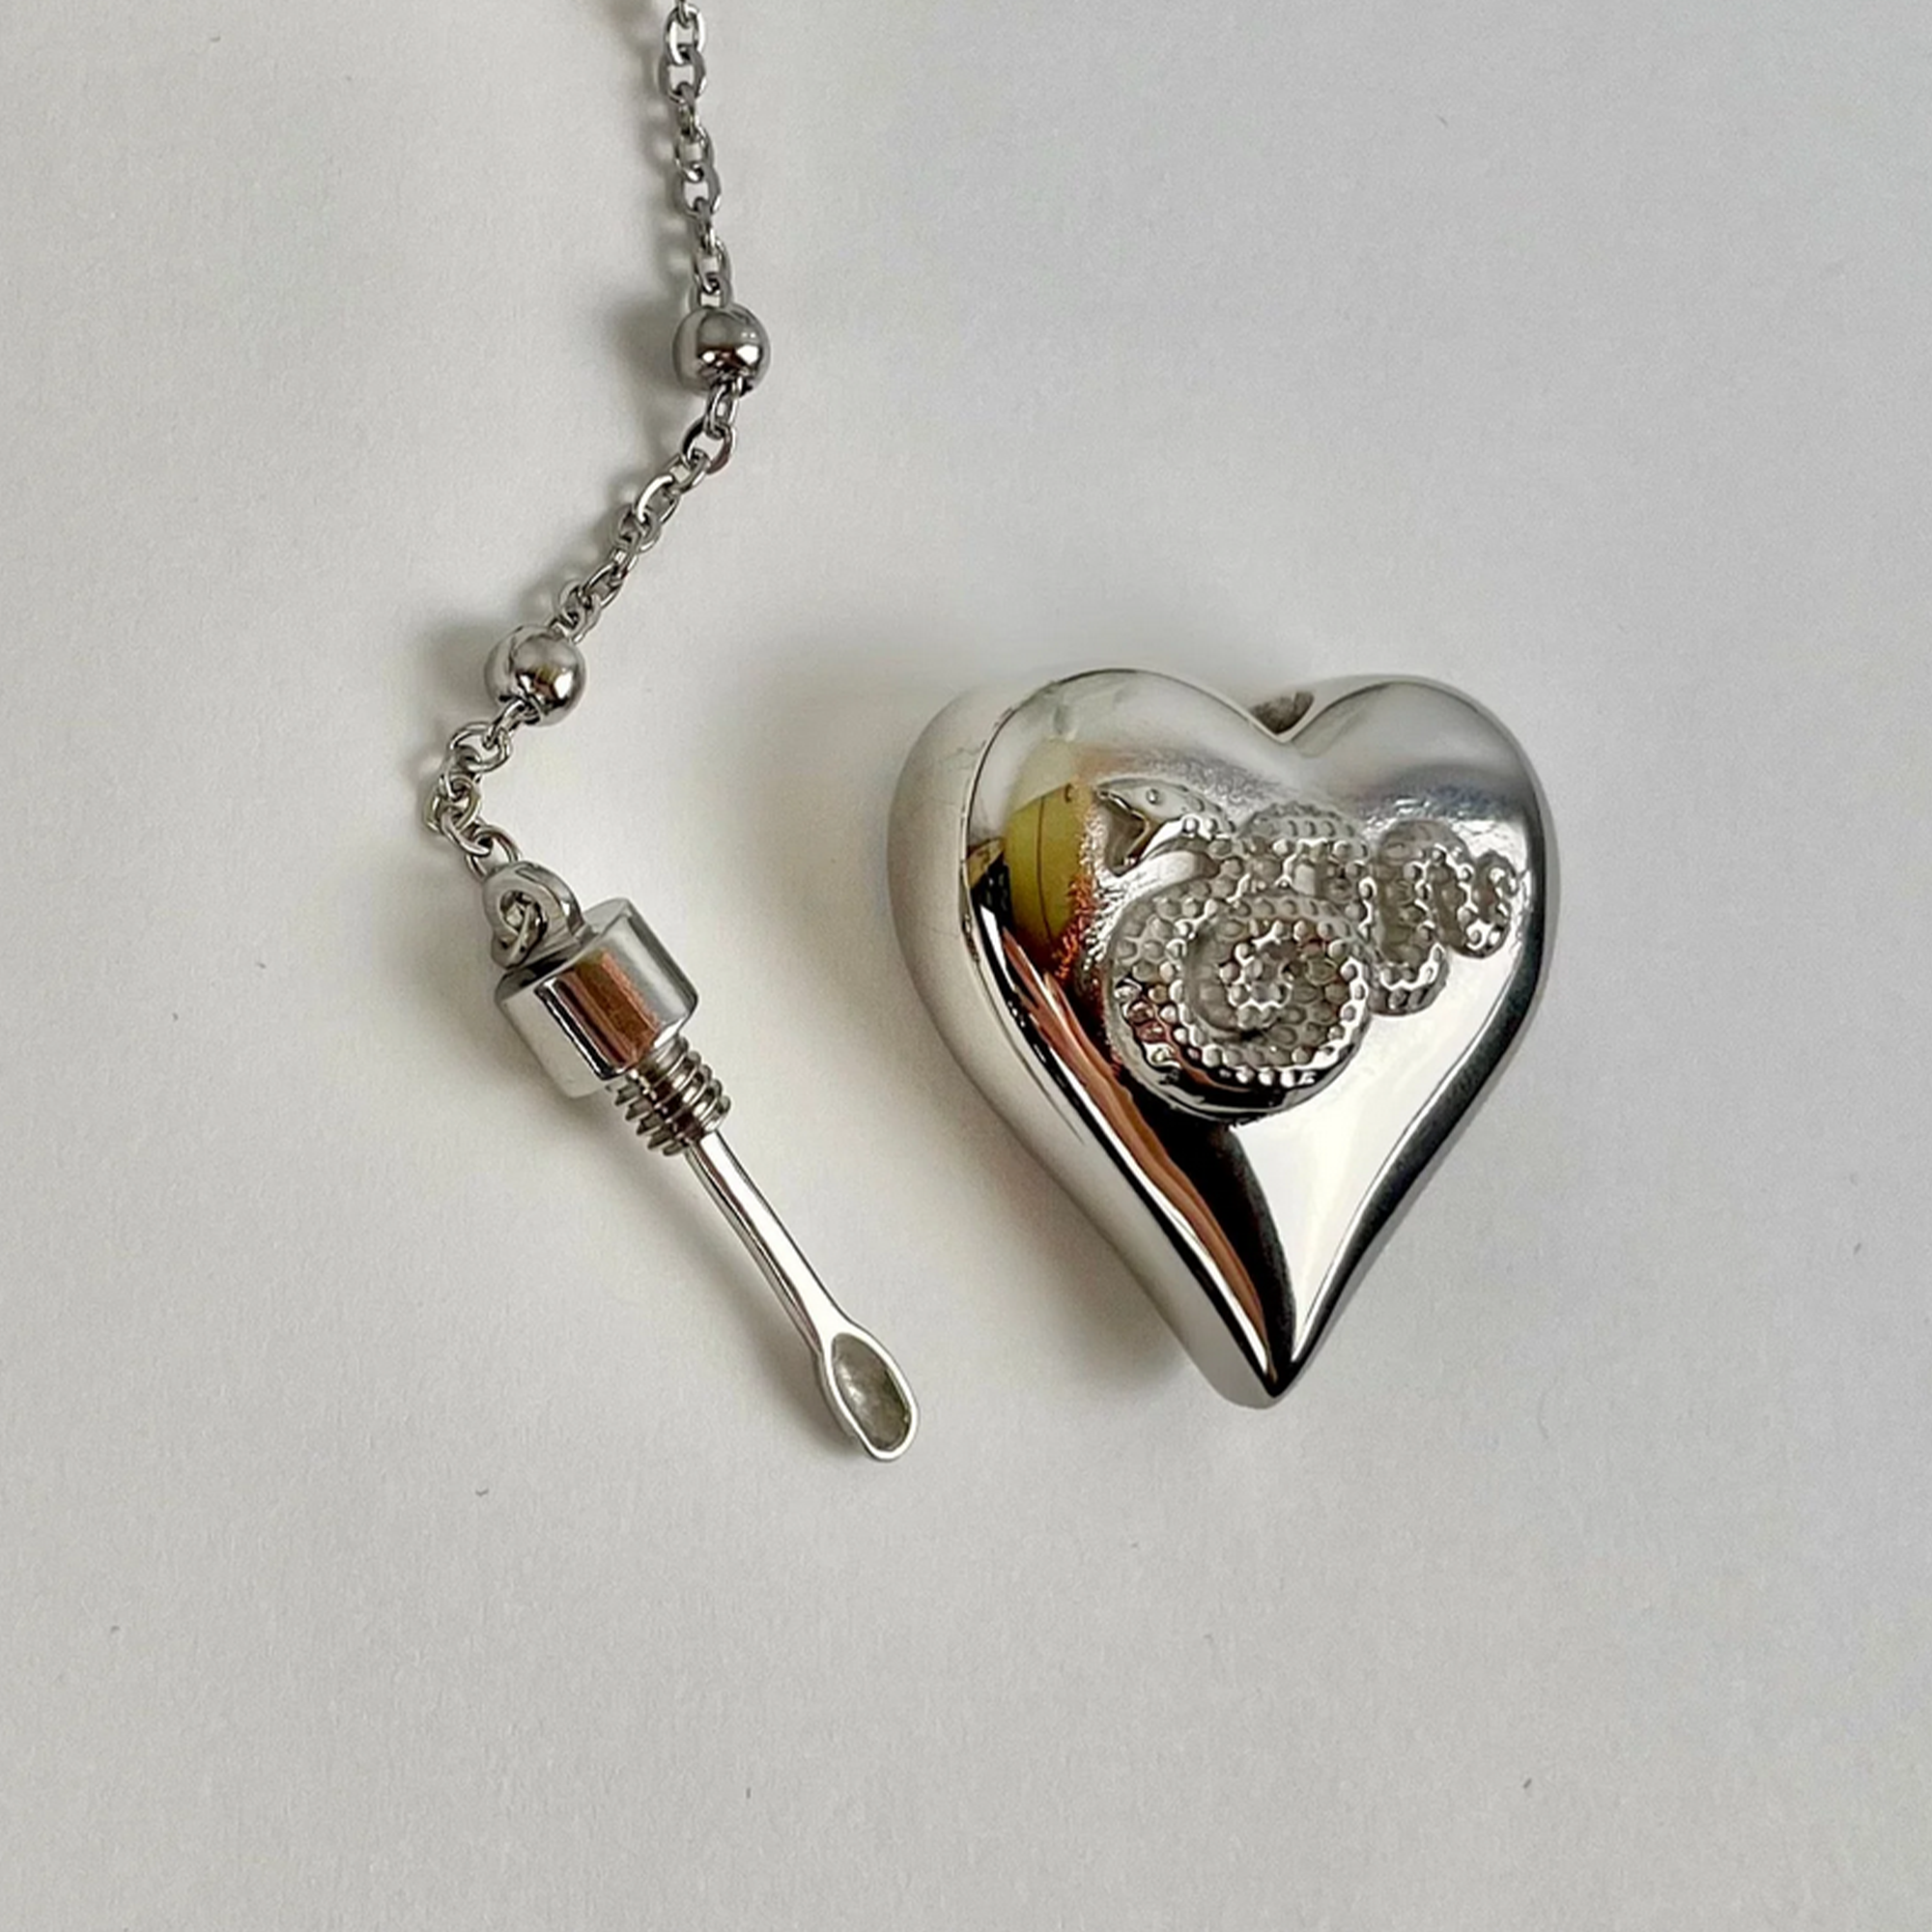 Lana Del Rey Style Heart Necklace/rosary - Etsy